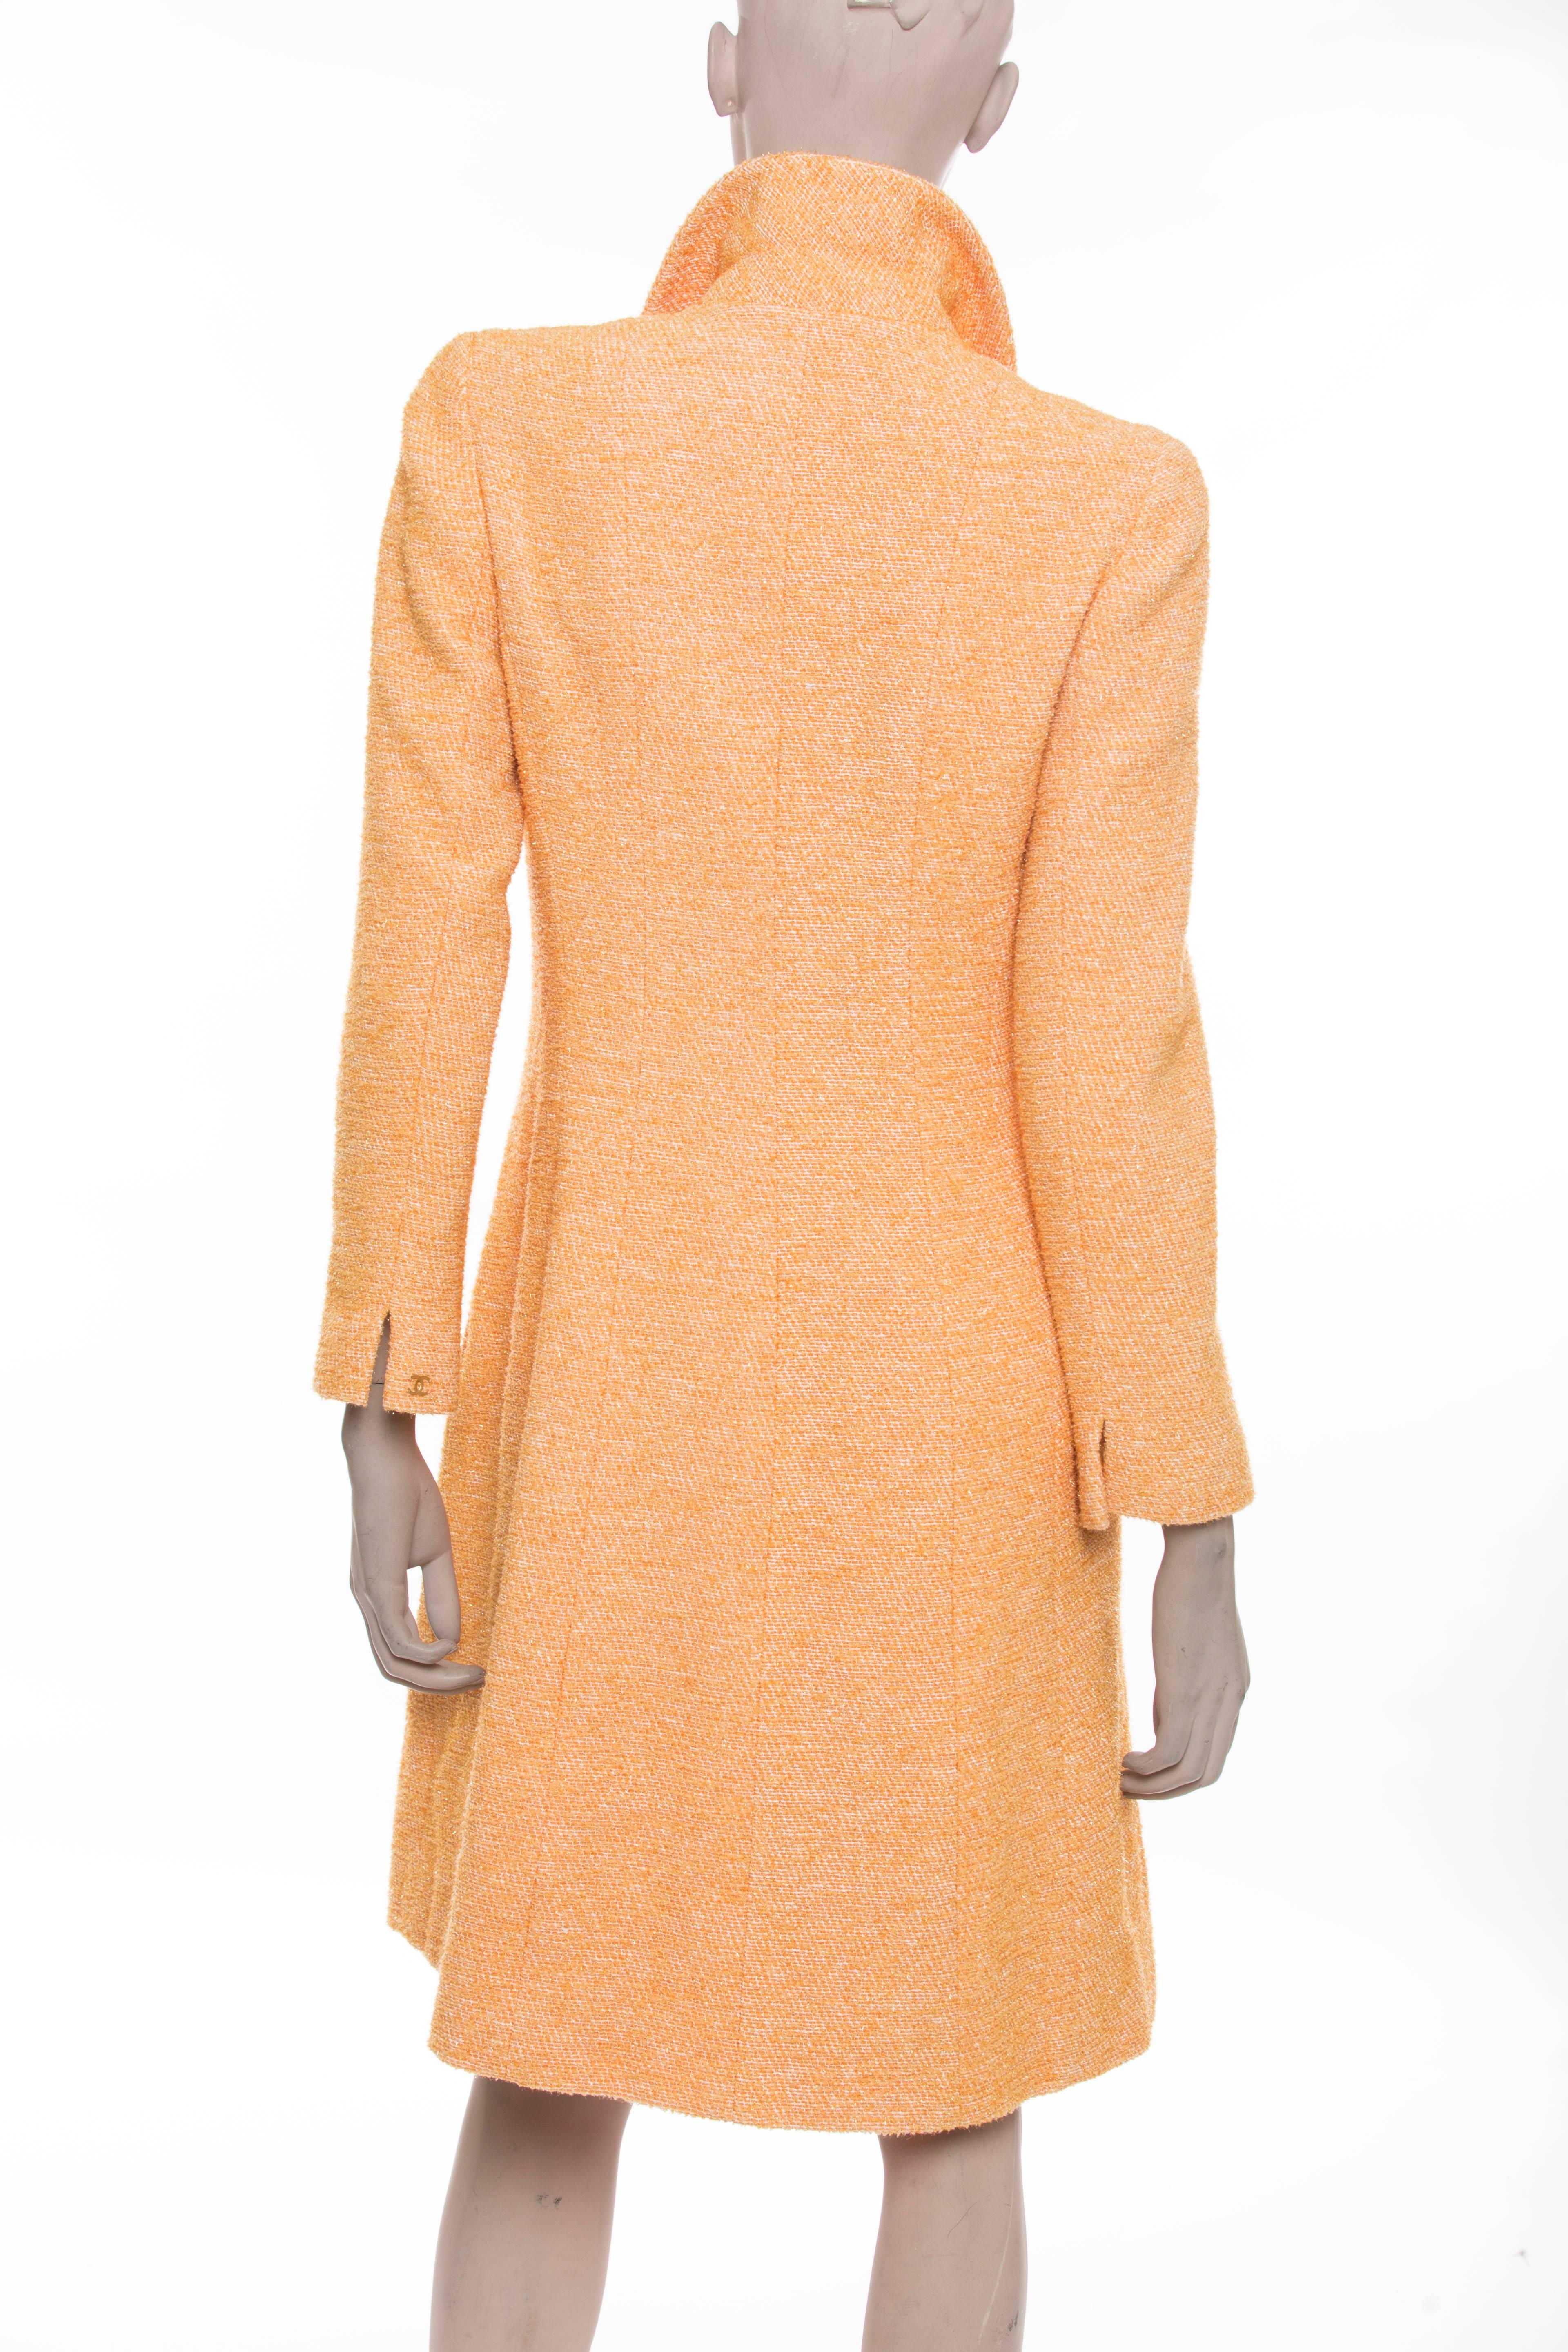 Orange Chanel Voided Velvet Halter Dress And Coat Ensemble, Cruise 2001 For Sale